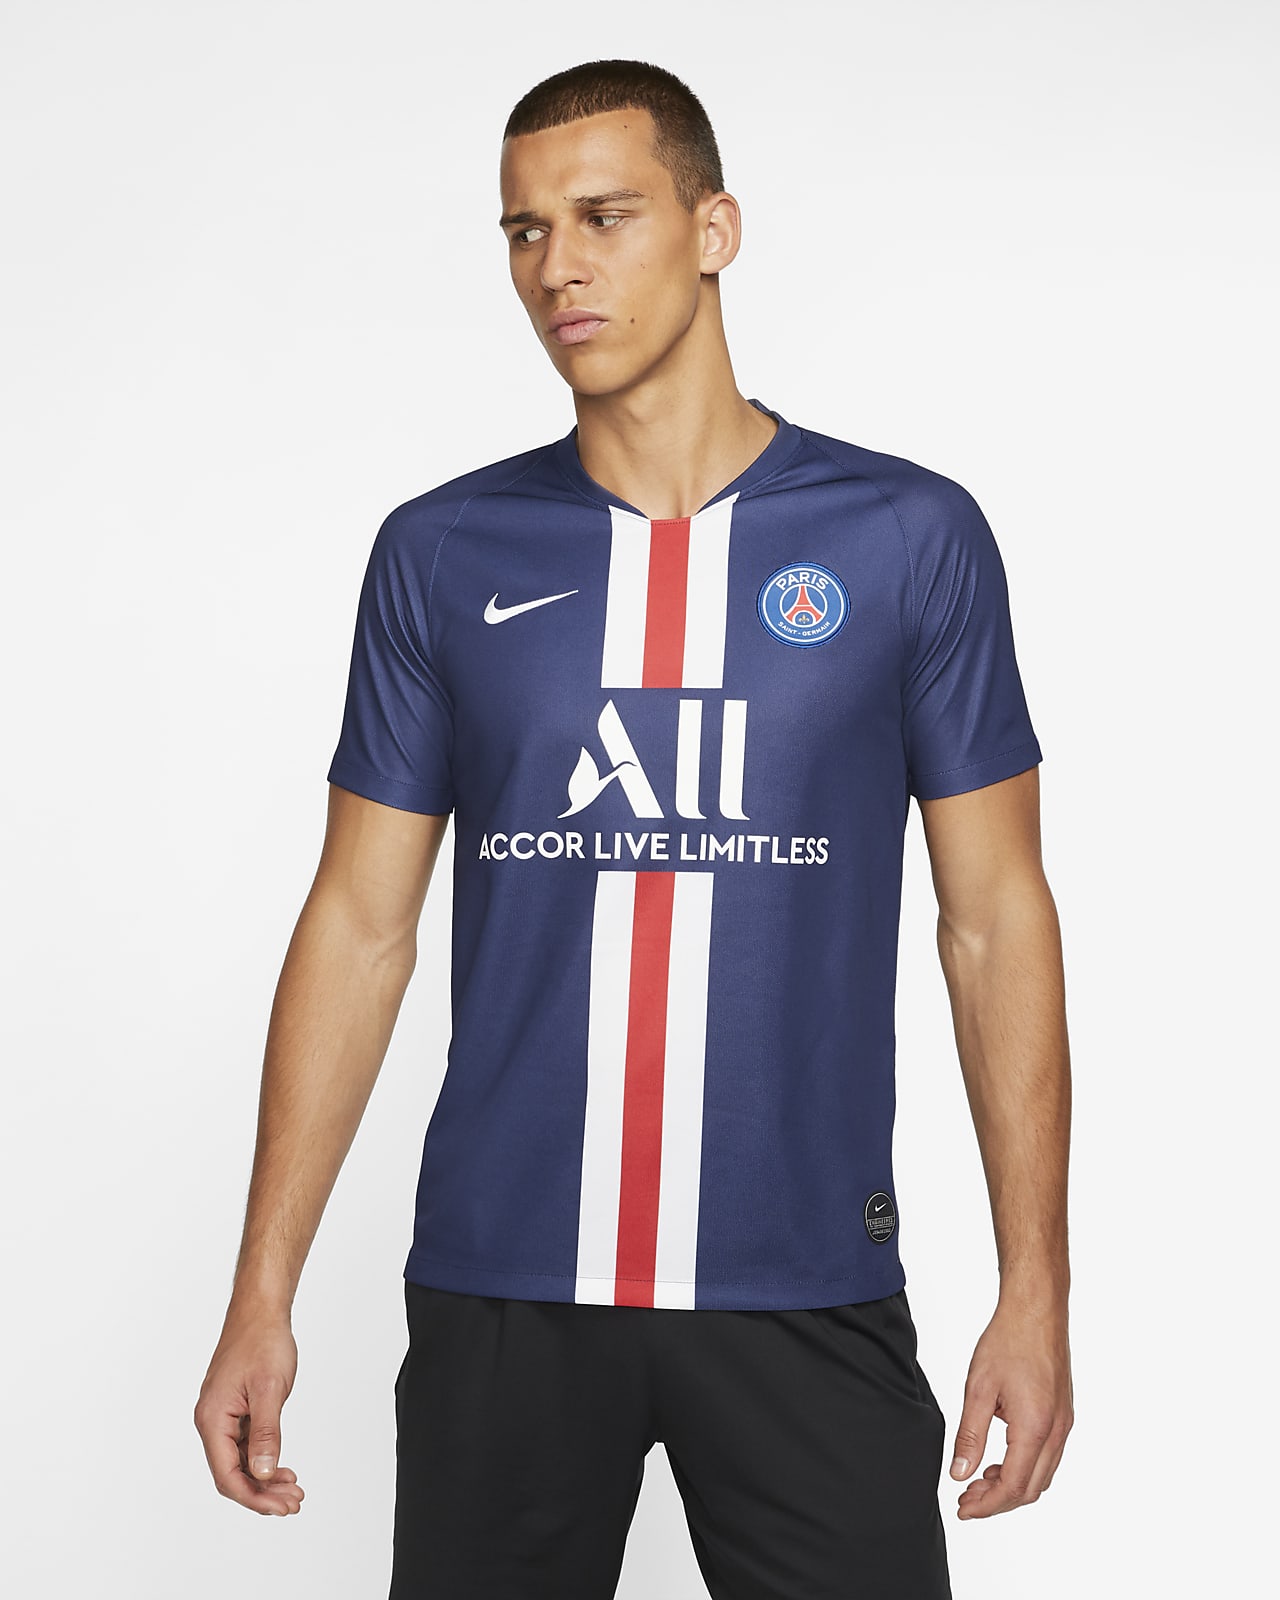 Cañón Roca deficiencia Camiseta de fútbol de local para hombre Stadium del Paris Saint-Germain 2019/20.  Nike.com